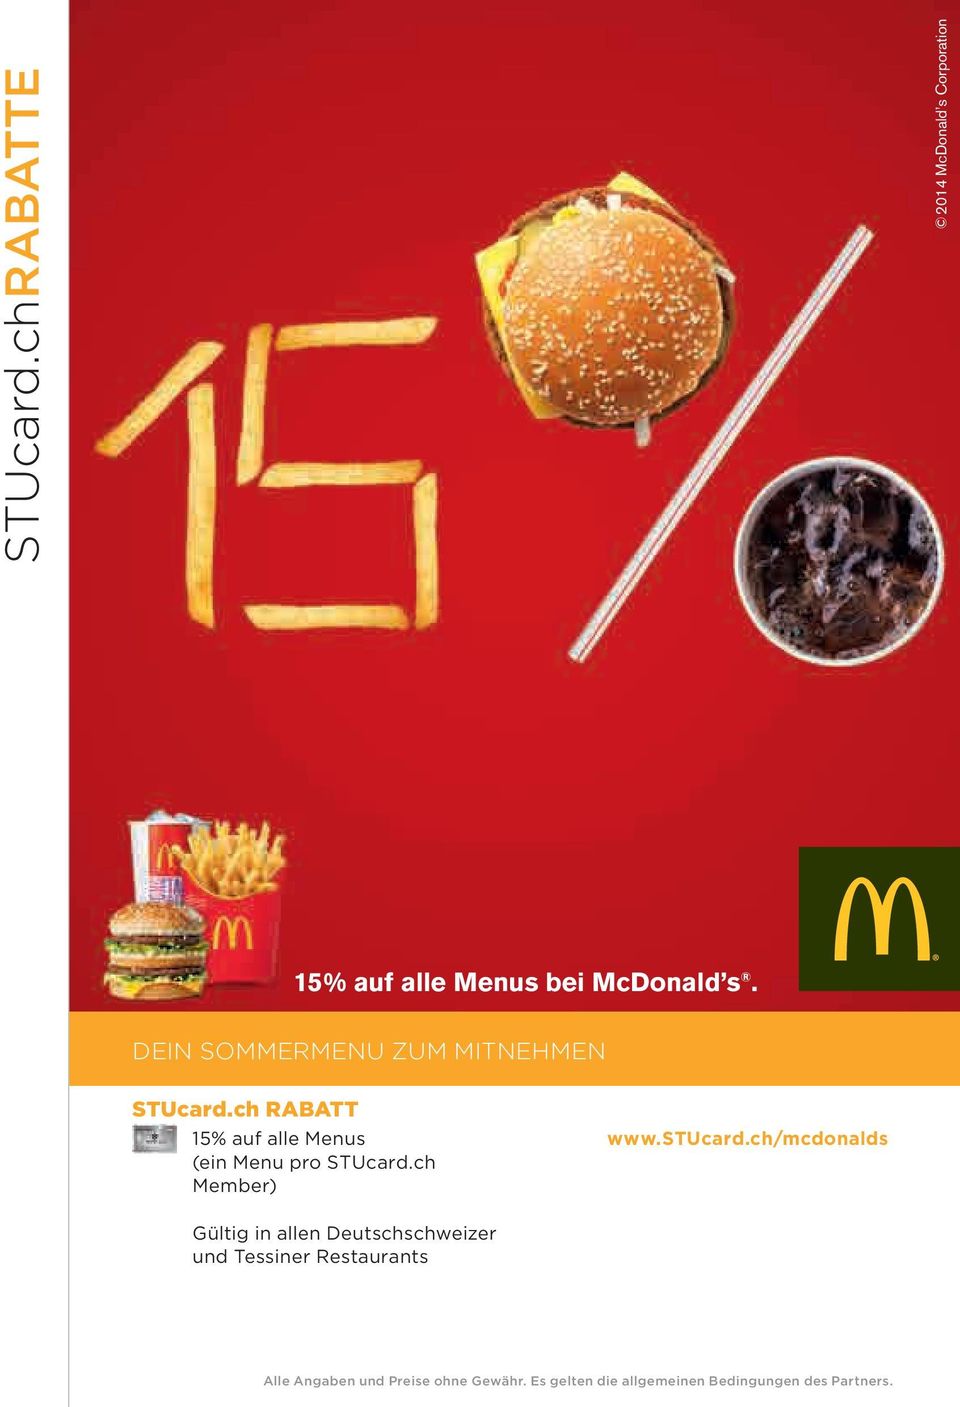 s 15% auf alle Menus bei McDonald s.